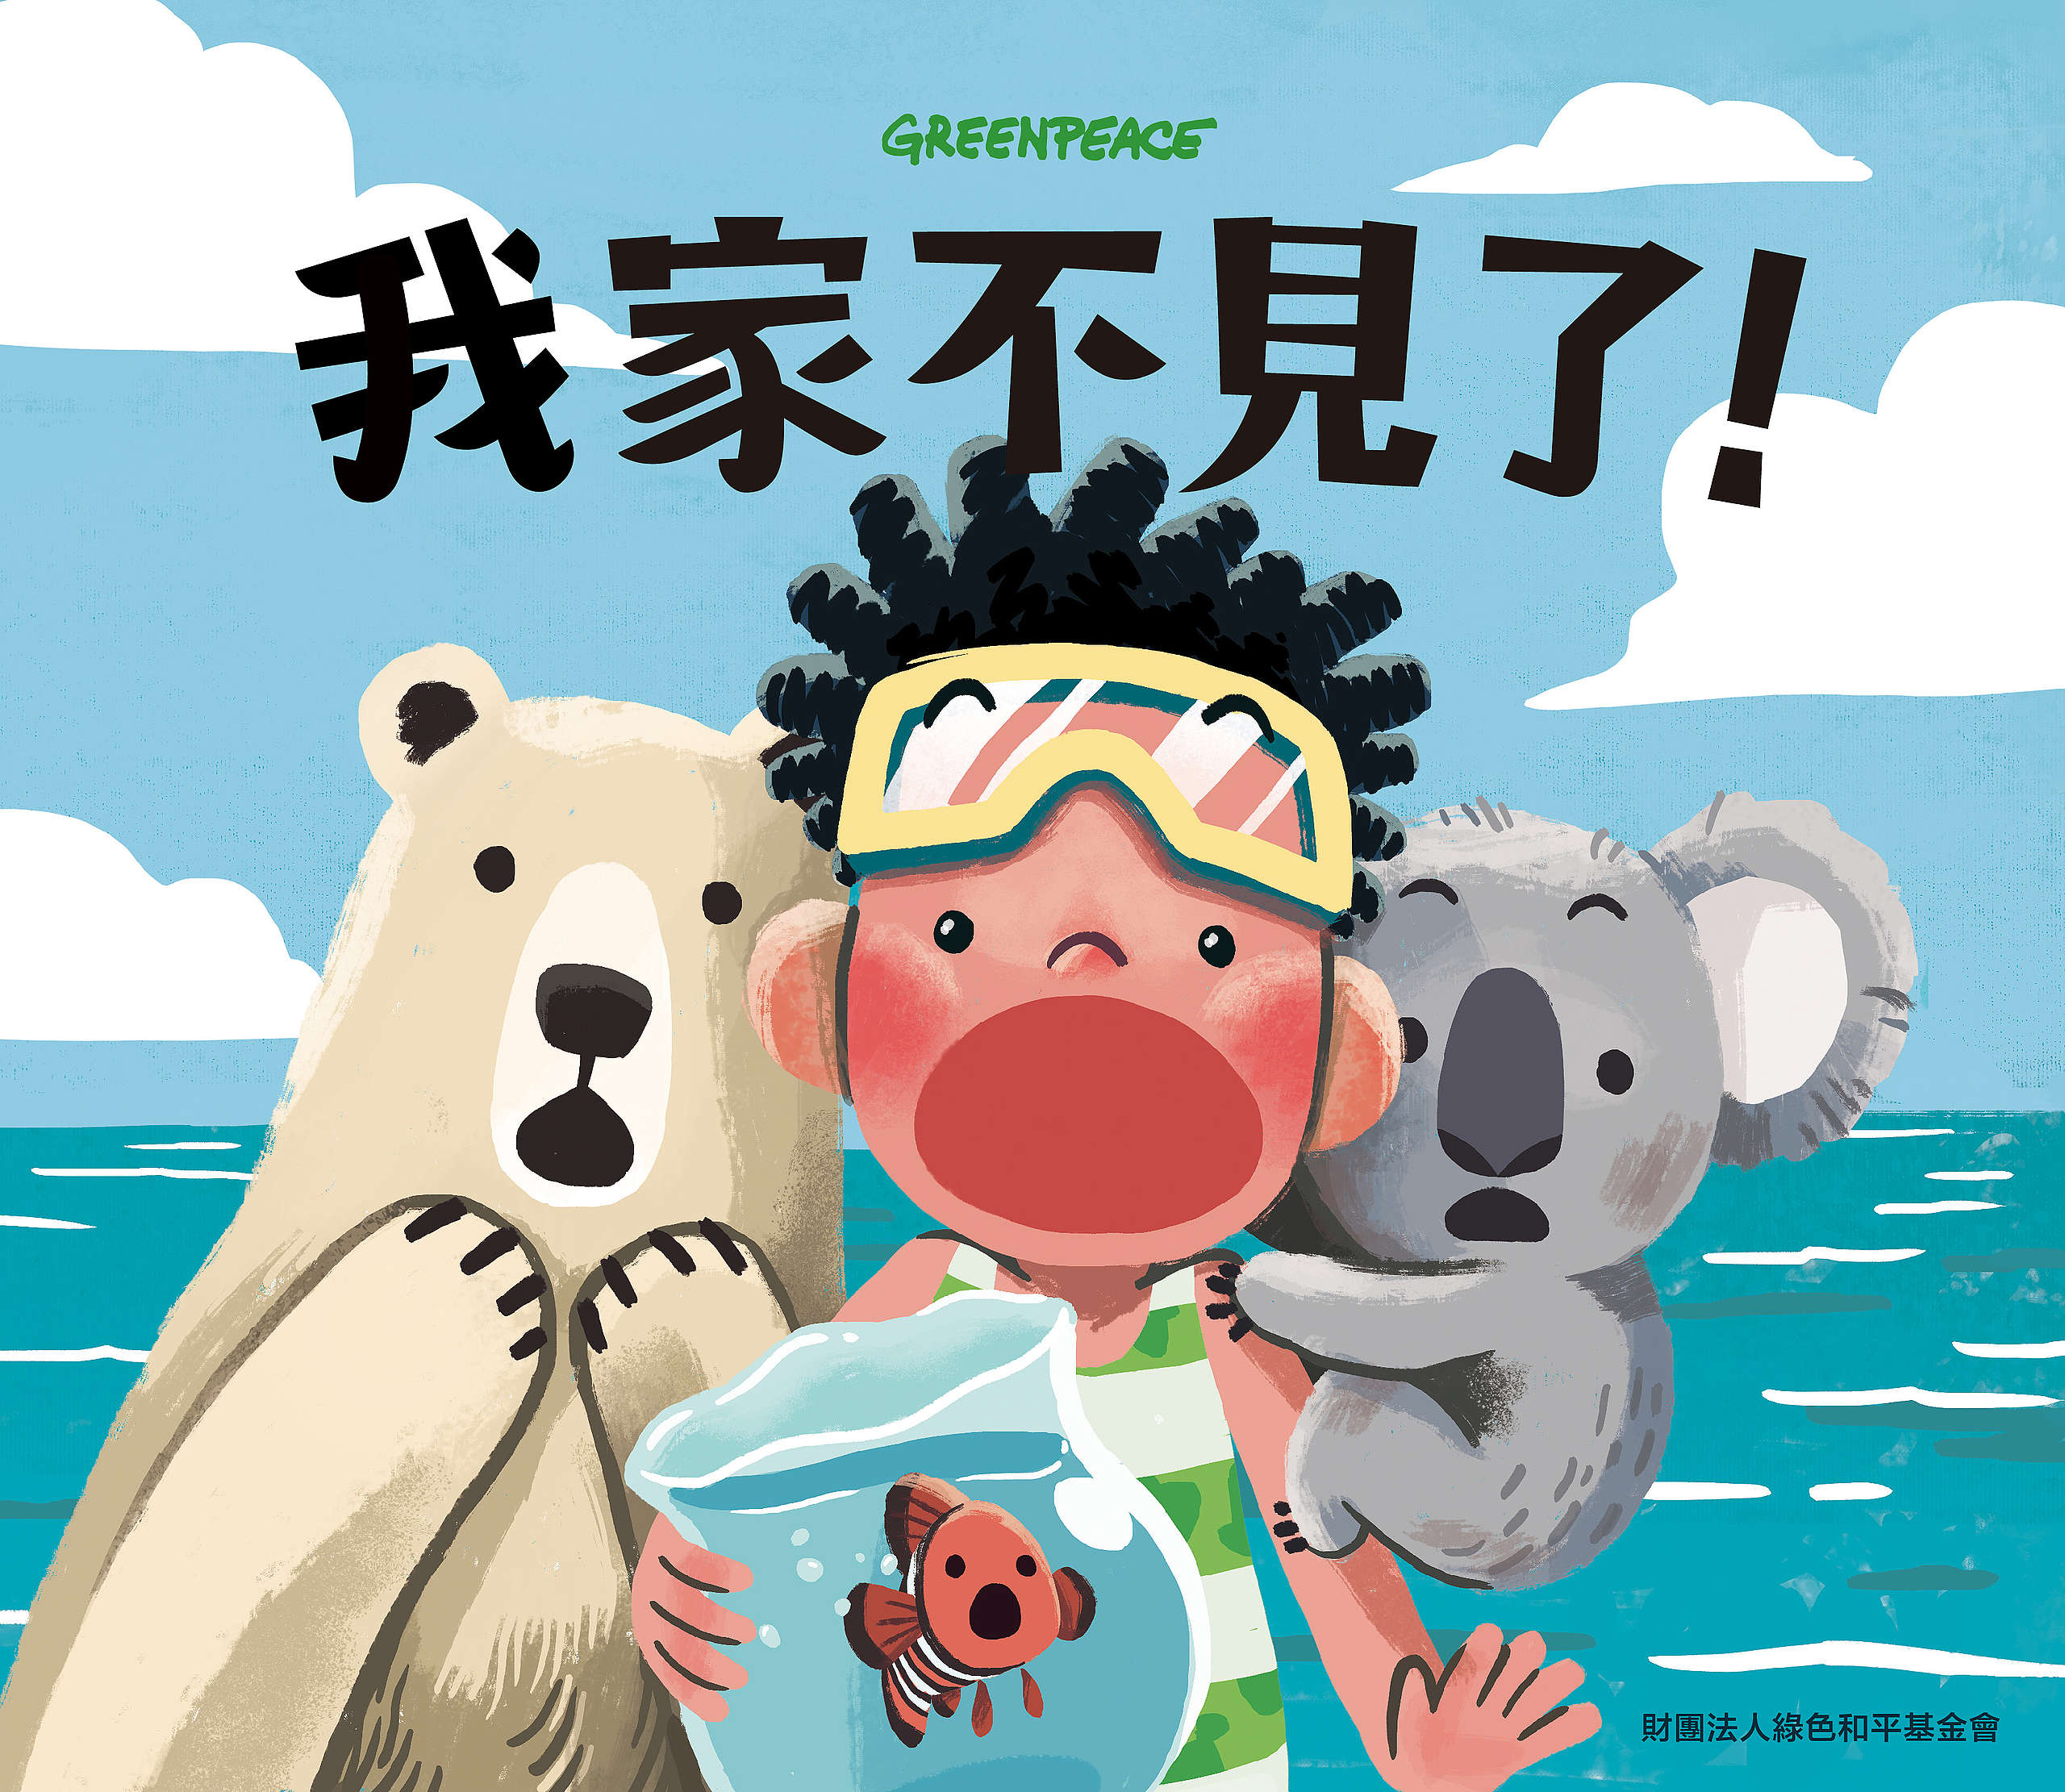 綠色和平製作《我家不見了》氣候教育兒童繪本，自故事構思開始，至插畫、編修、印刷，共花費約九個月的時間完成，於2020年底推出。© Greenpeace